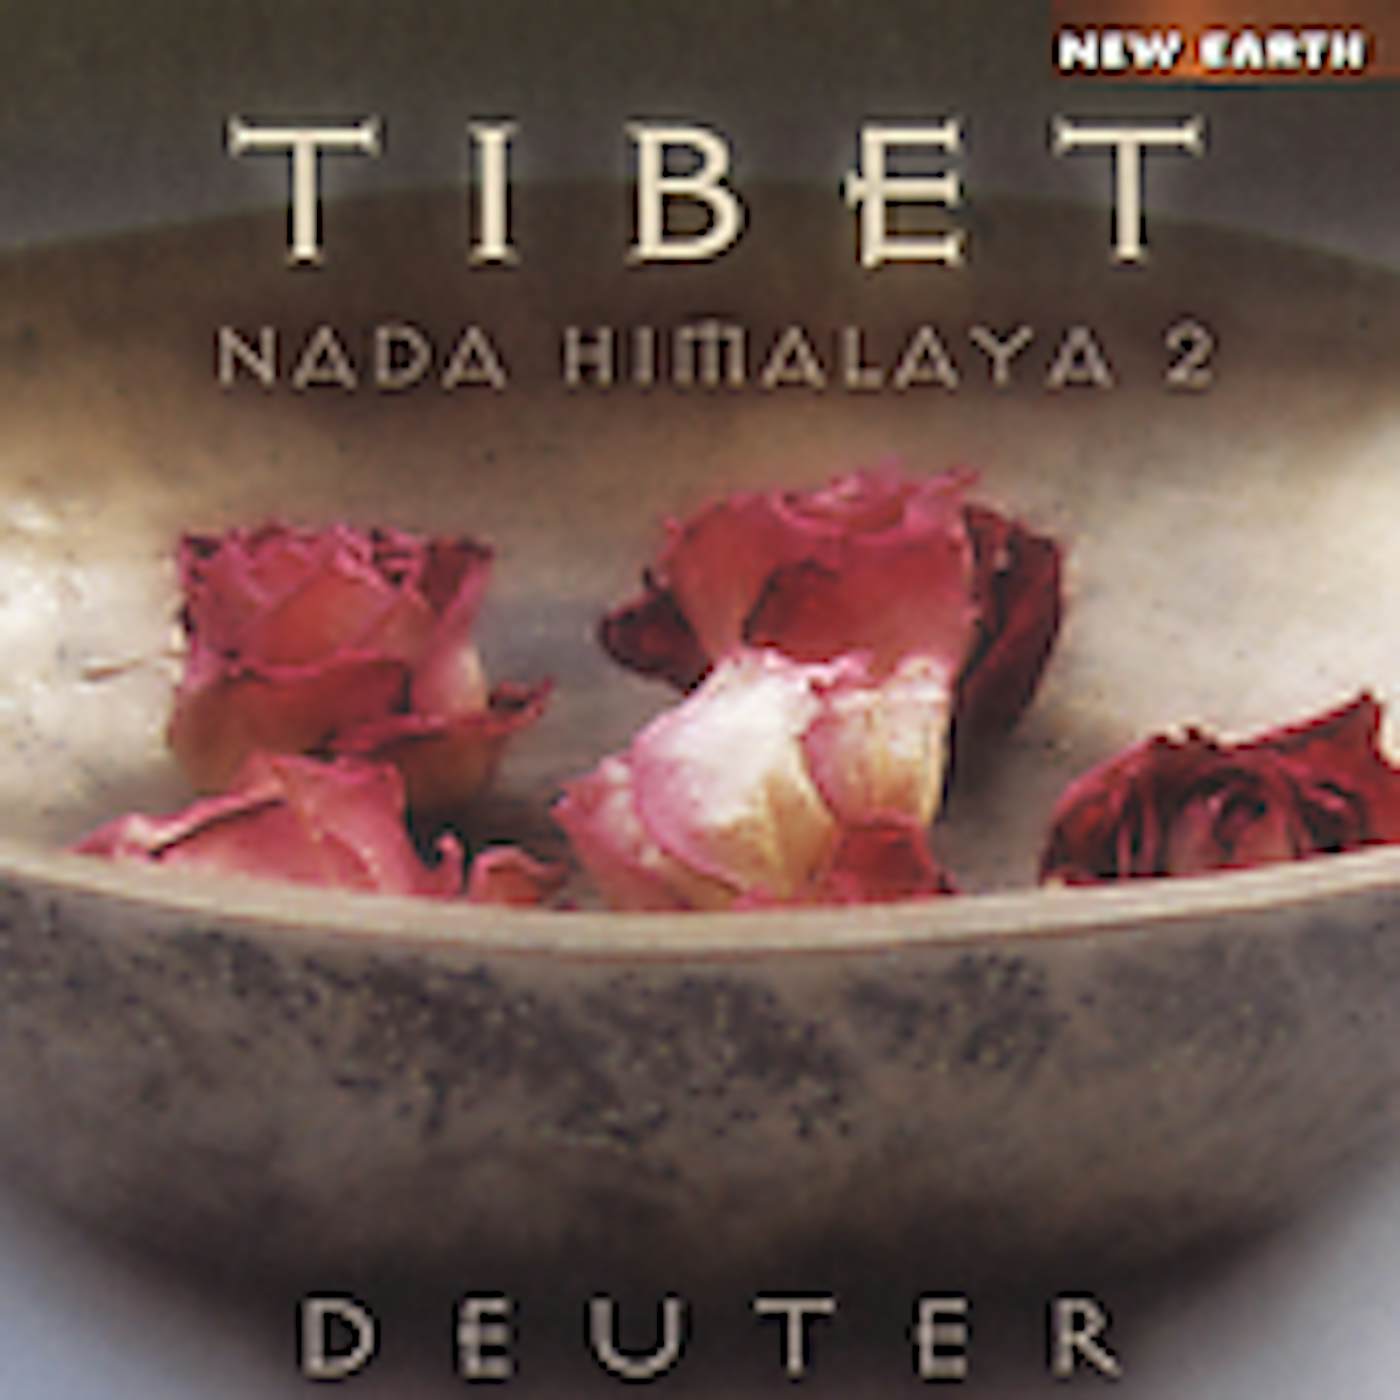 Deuter TIBET: NADA HIMALAYA 2 CD